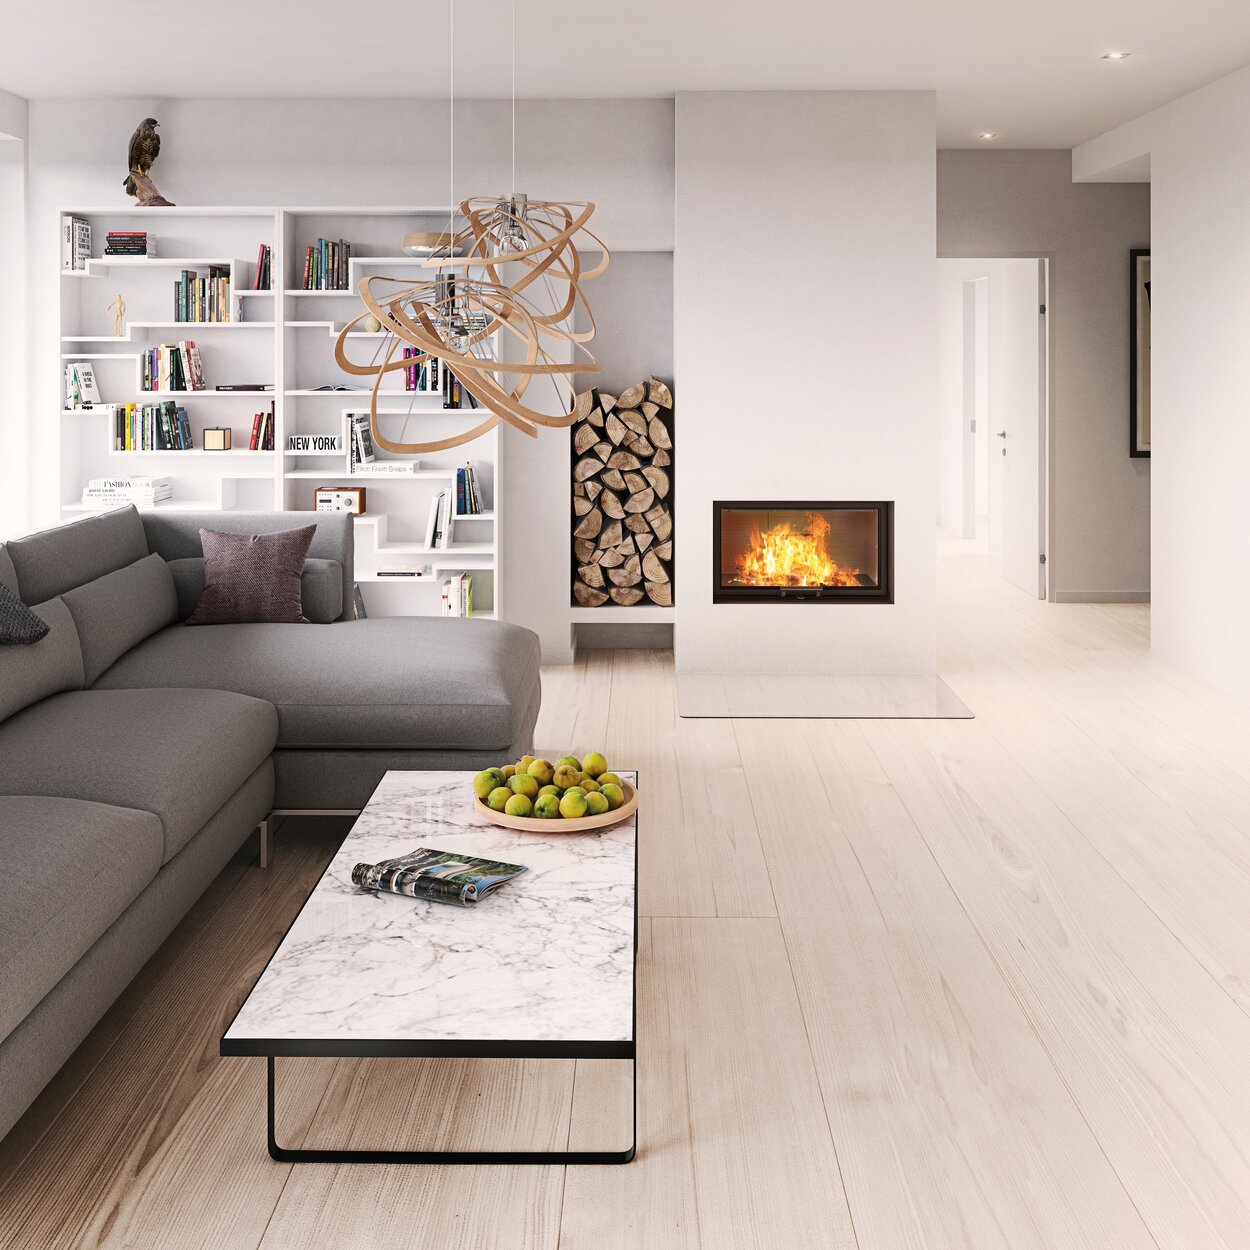 Inserts de cheminée à bois VISIO 1, le modèle frontal dans le salon moderne